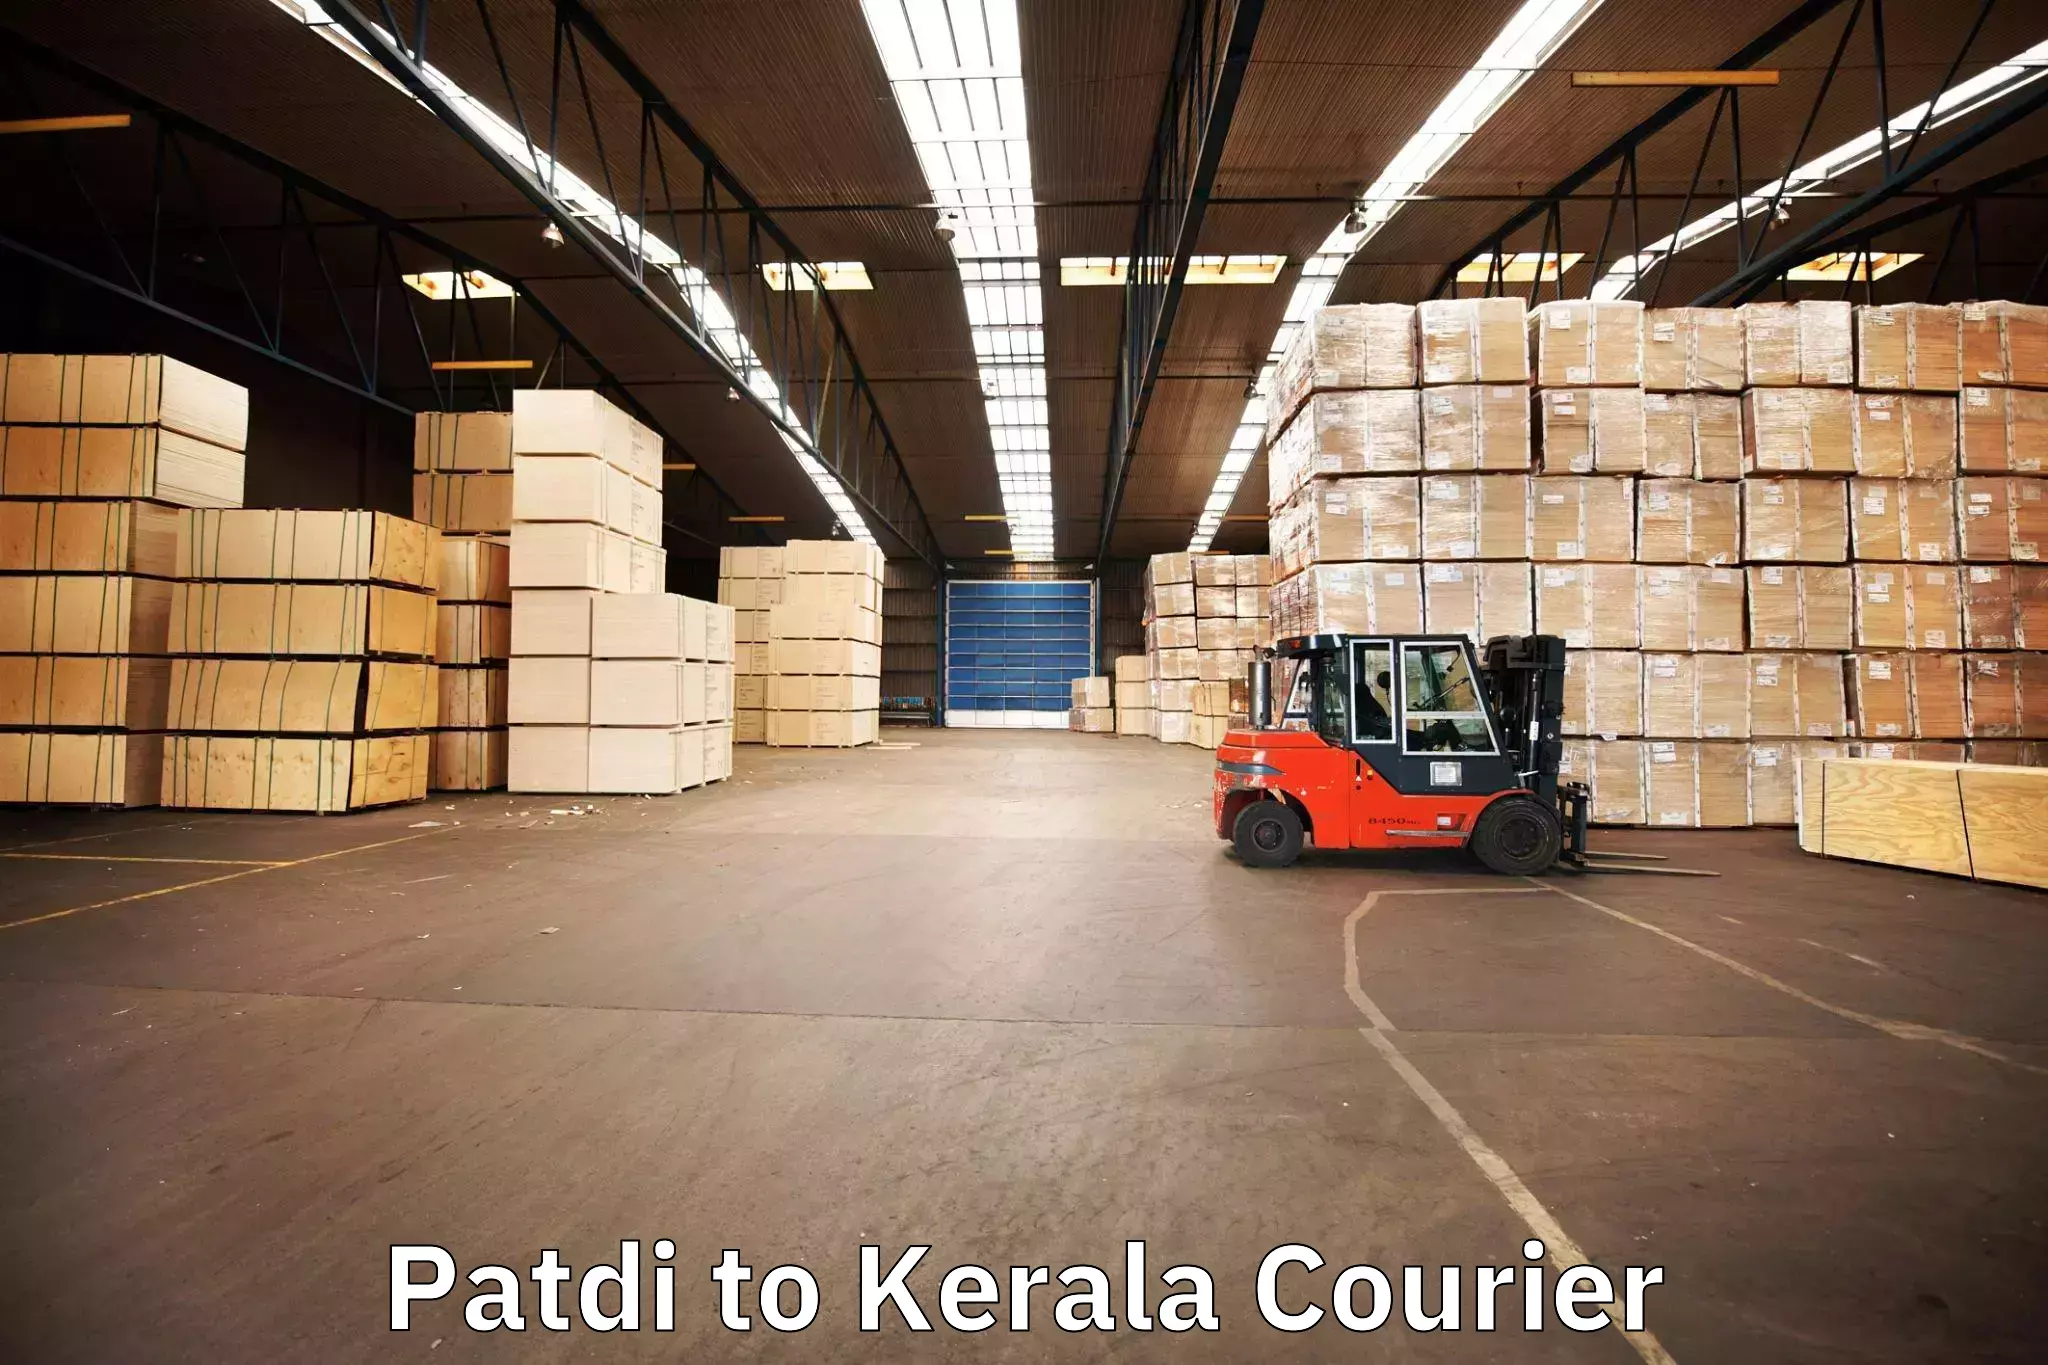 Trusted furniture transport in Patdi to Kerala